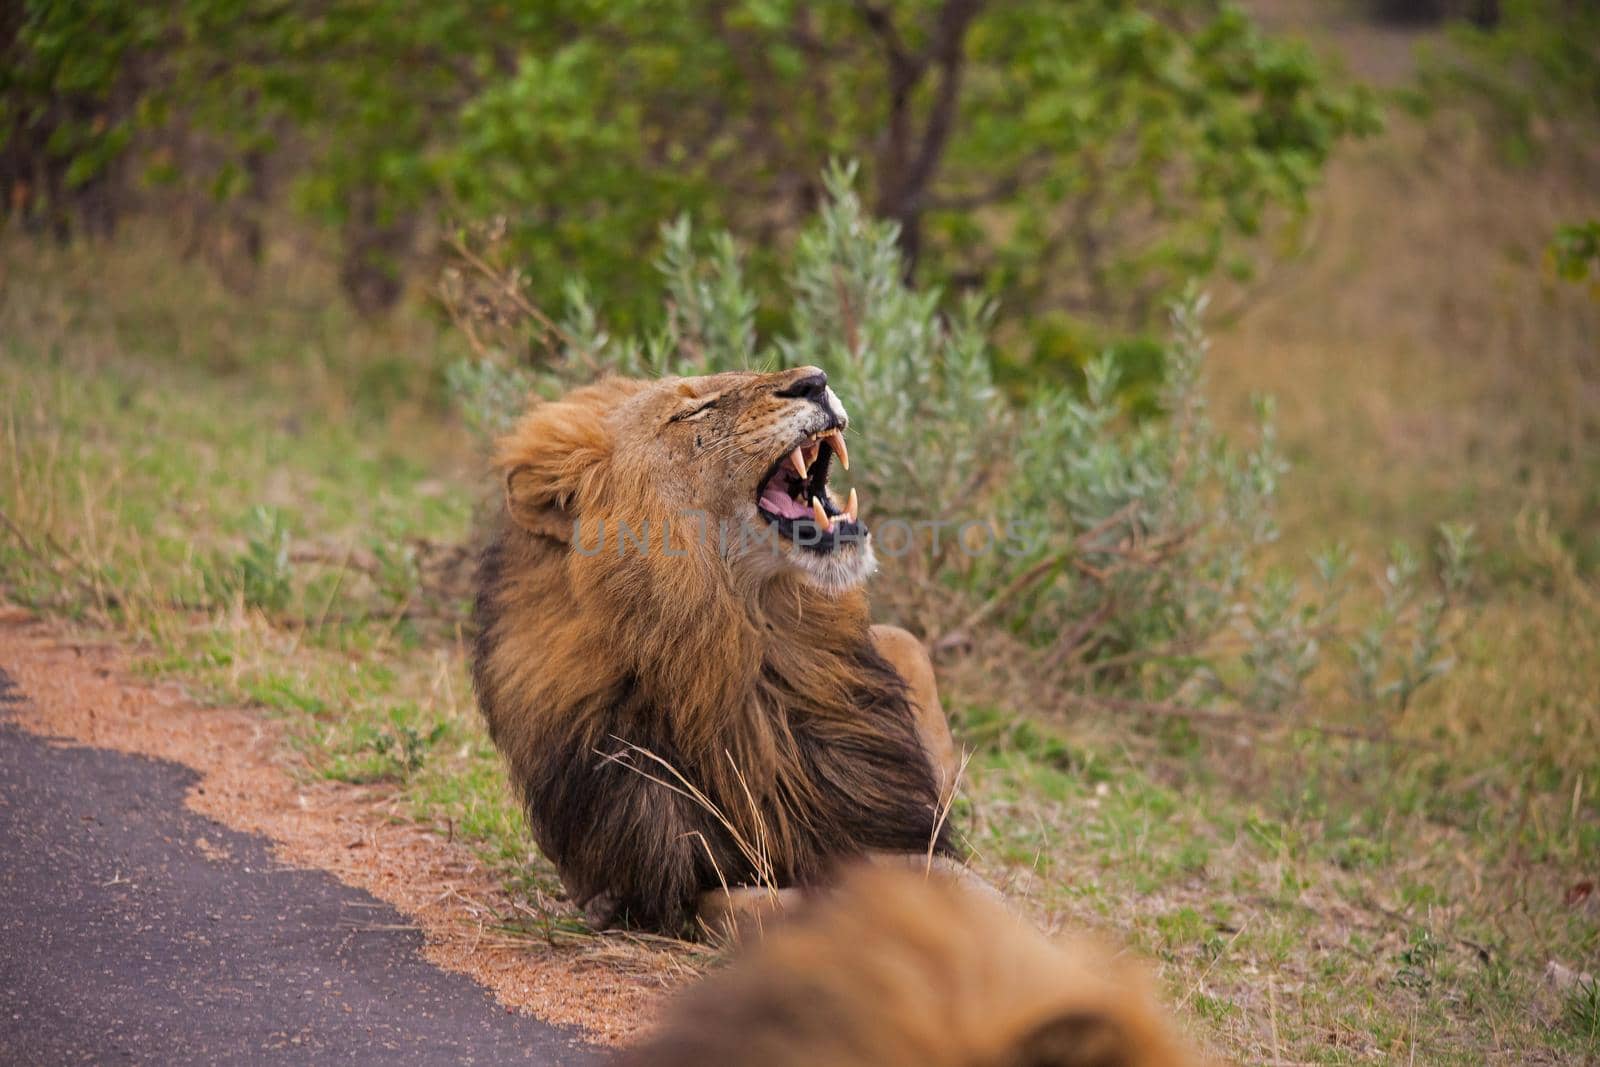 Yawning Male Lion 14901 by kobus_peche